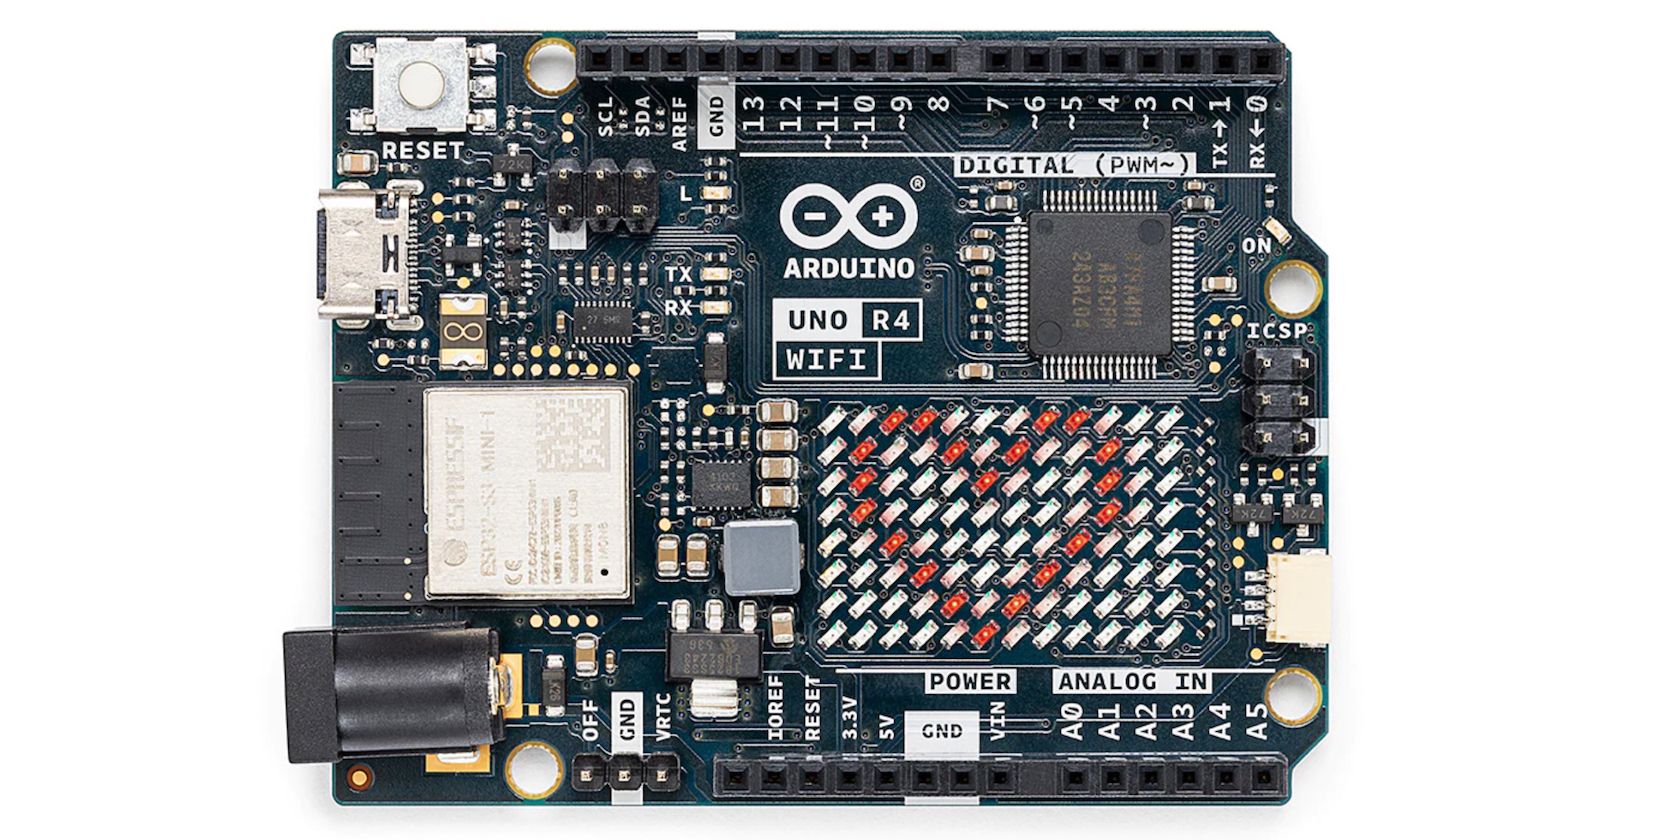 Arduino Uno R4 board